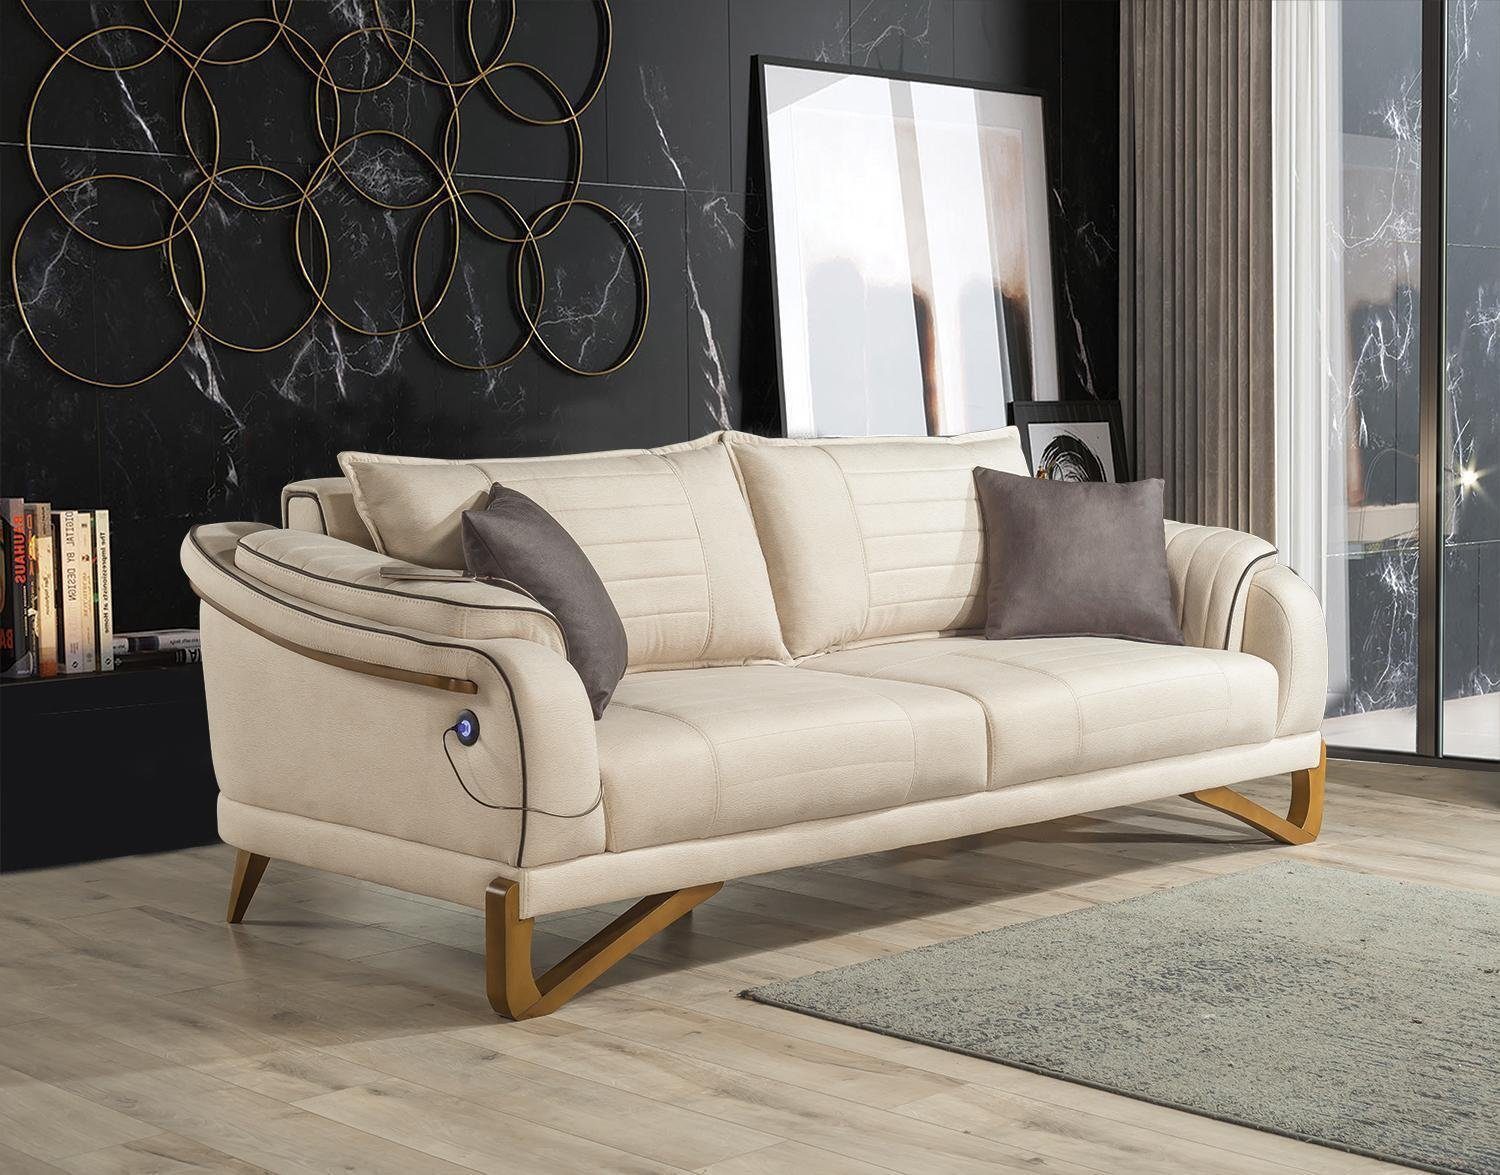 JVmoebel 3-Sitzer Designer Weißer 3-Sitzer Textil Couch Elegantes Sofa Wohnzimmer, 1 Teile, Made in Europa